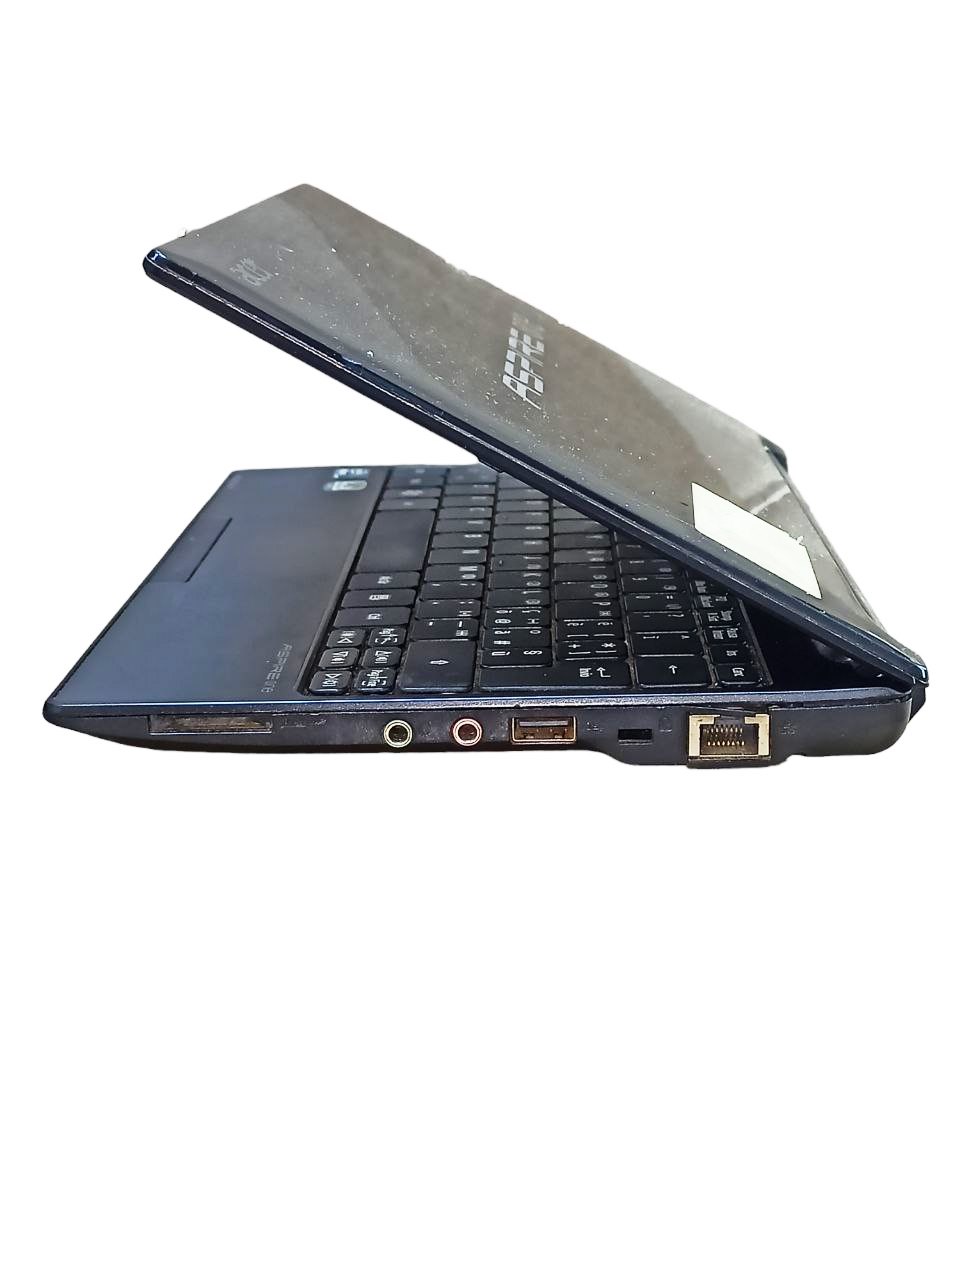 Нетбук Acer Aspire one (Intel Atom N570/2Gb/HDD320Gb) REF (13043705) 3